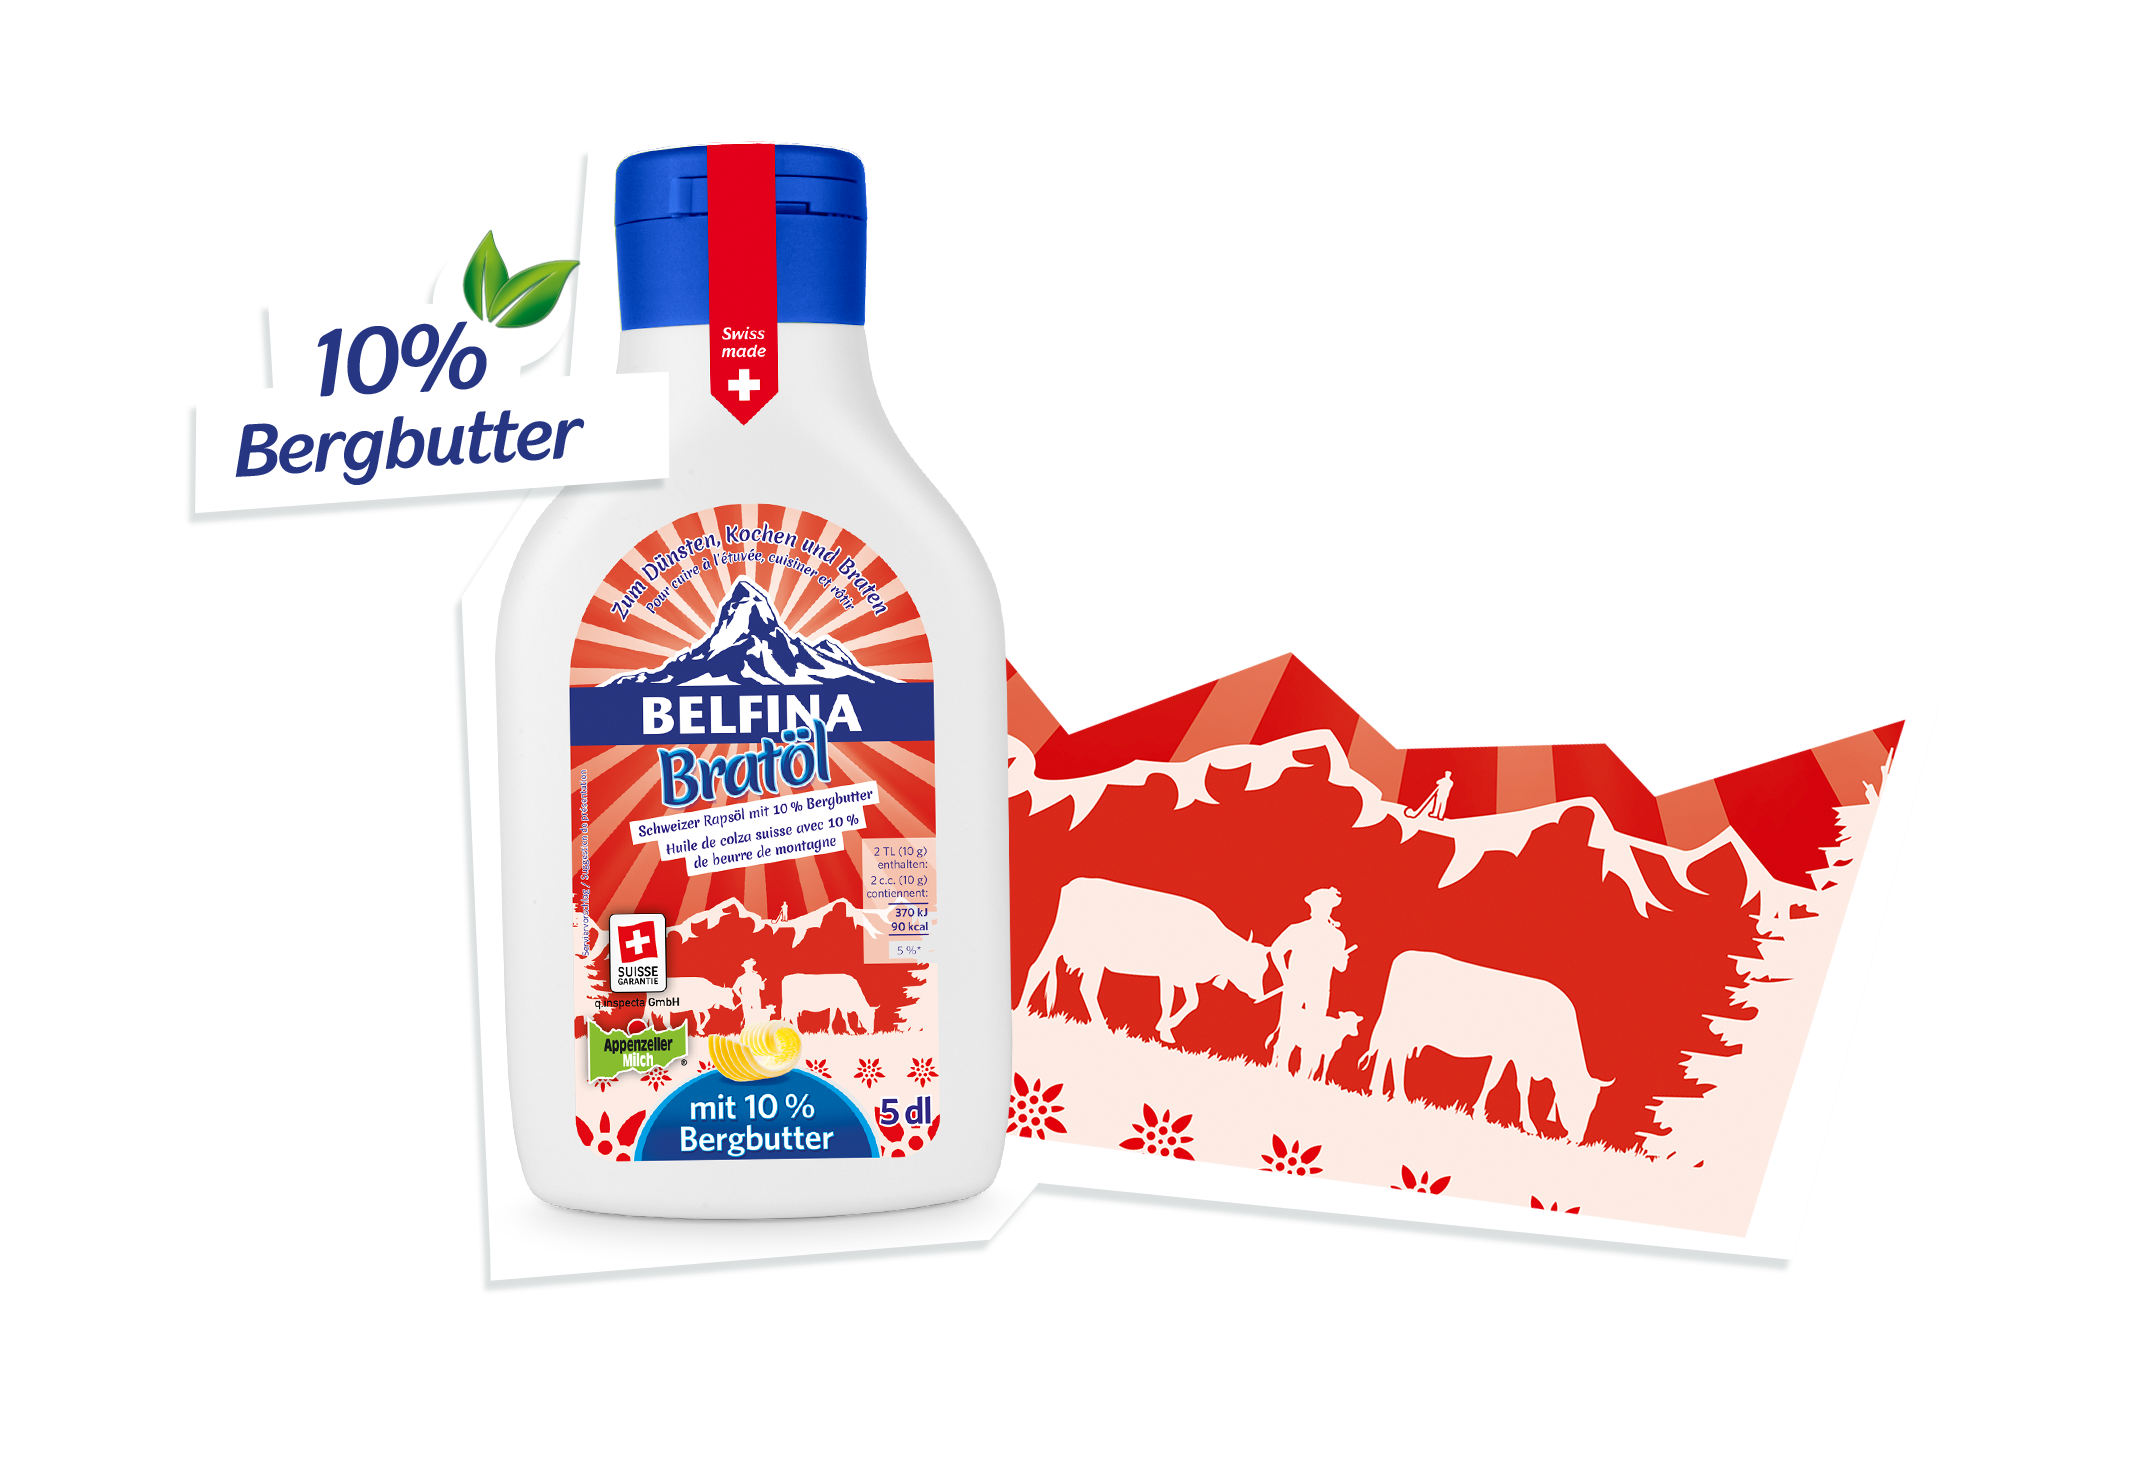 BELFINA Bratöl mit Appenzeller Bergbutter